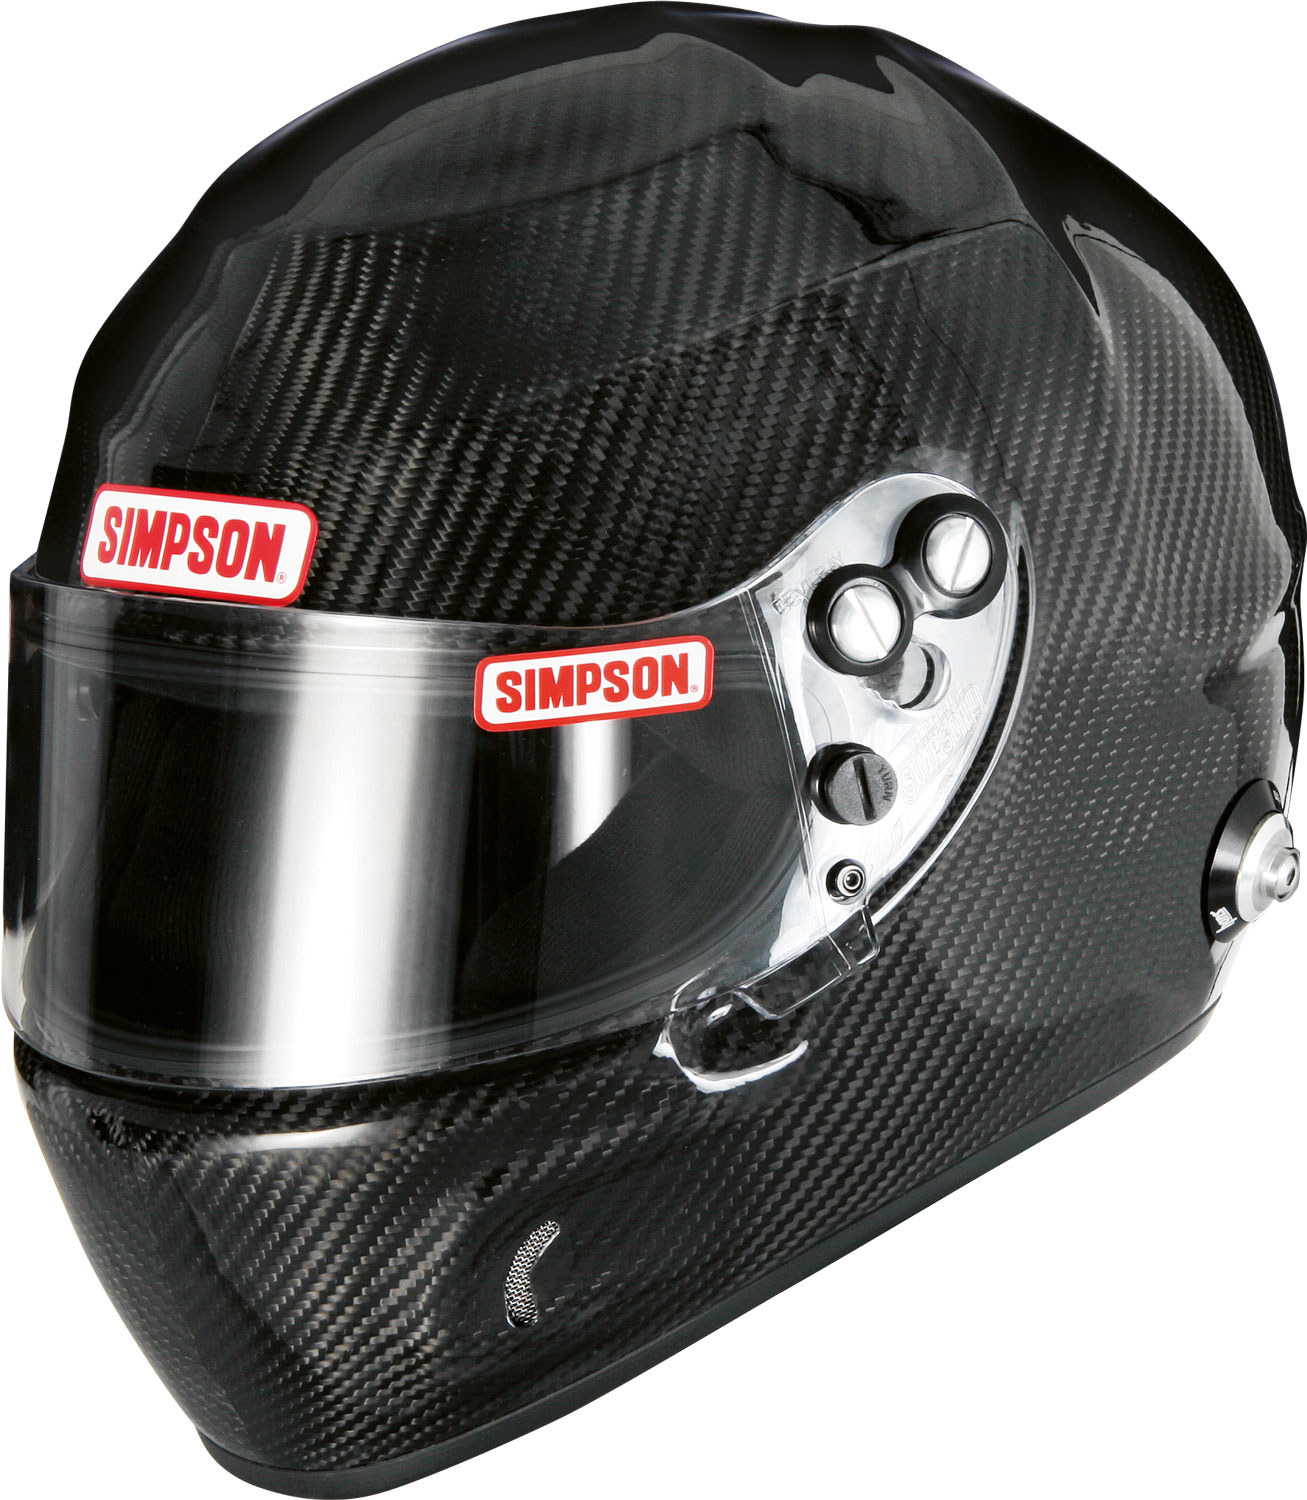 Simpson Helm Carbon Devil Ray